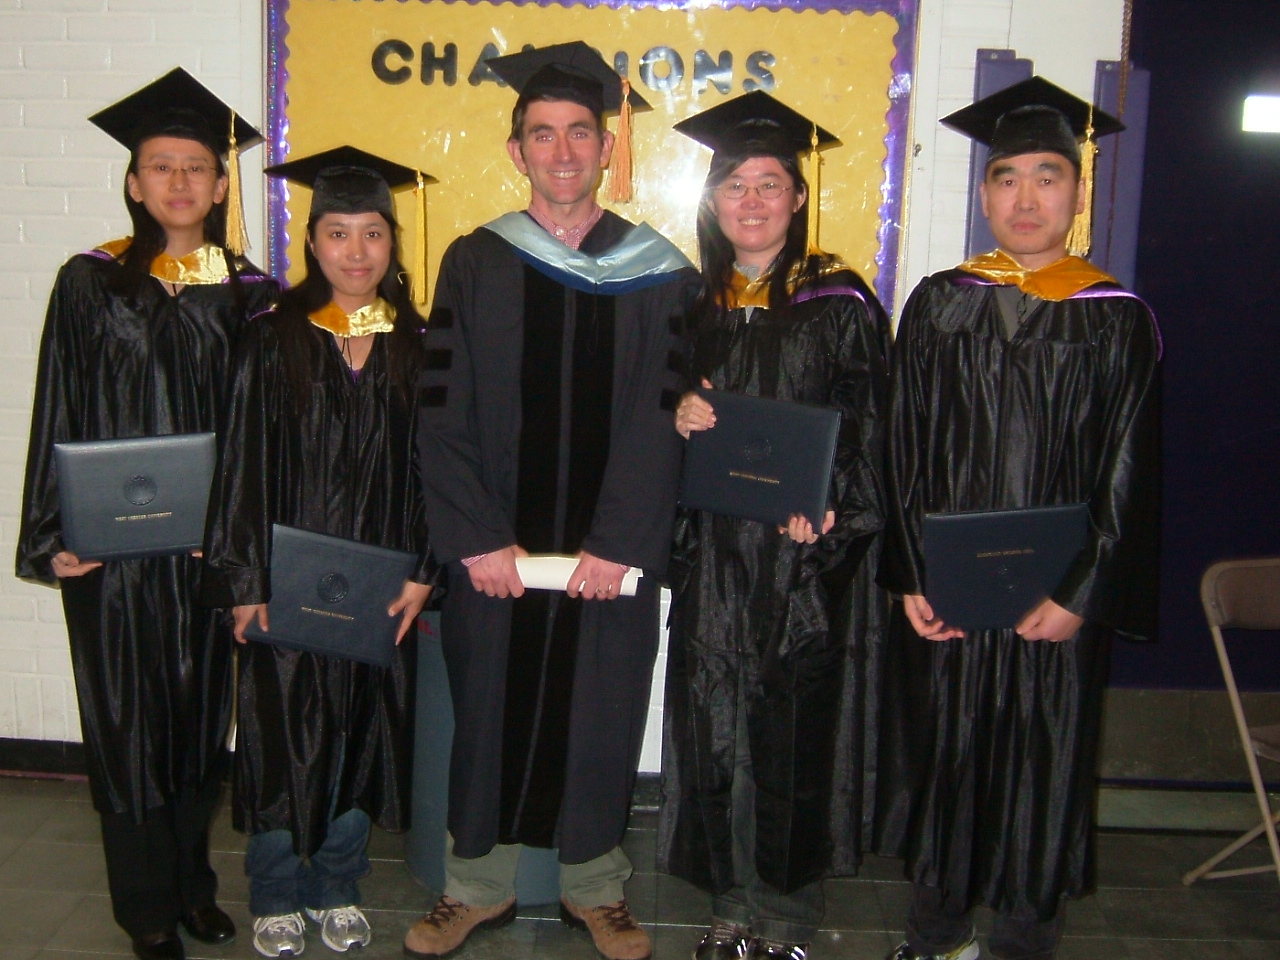 2009 Applied Stat Graduates